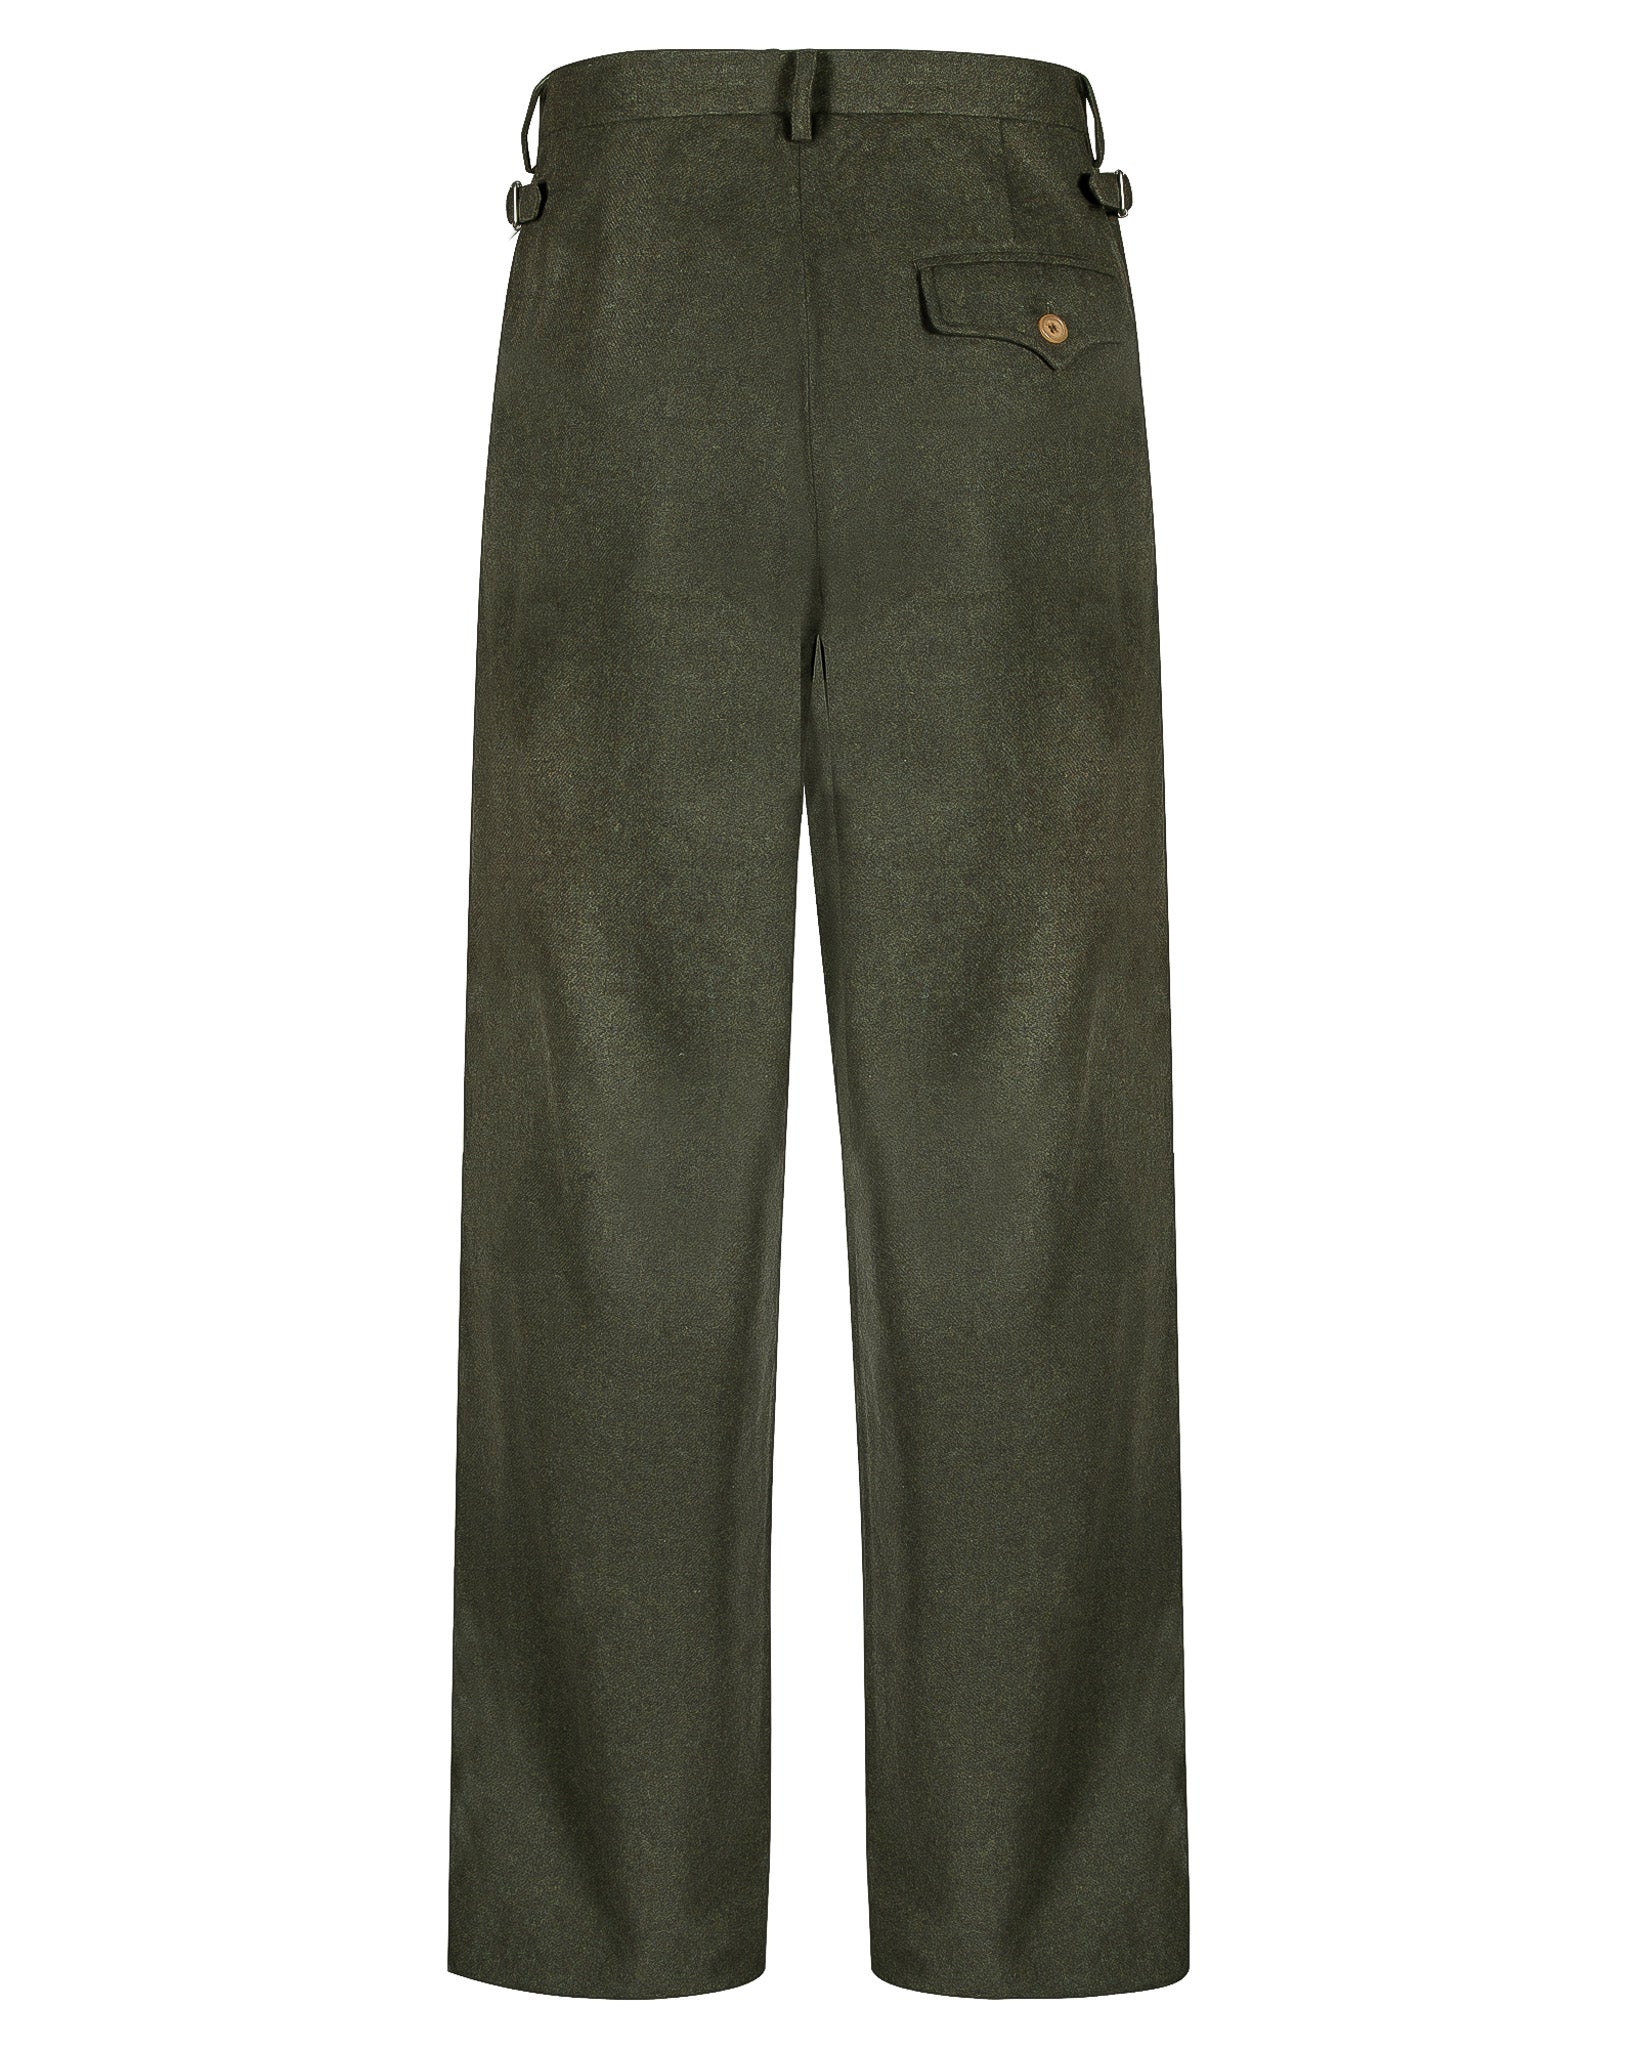 Sample Olive Flannel Shepperton Suit Size 40/32